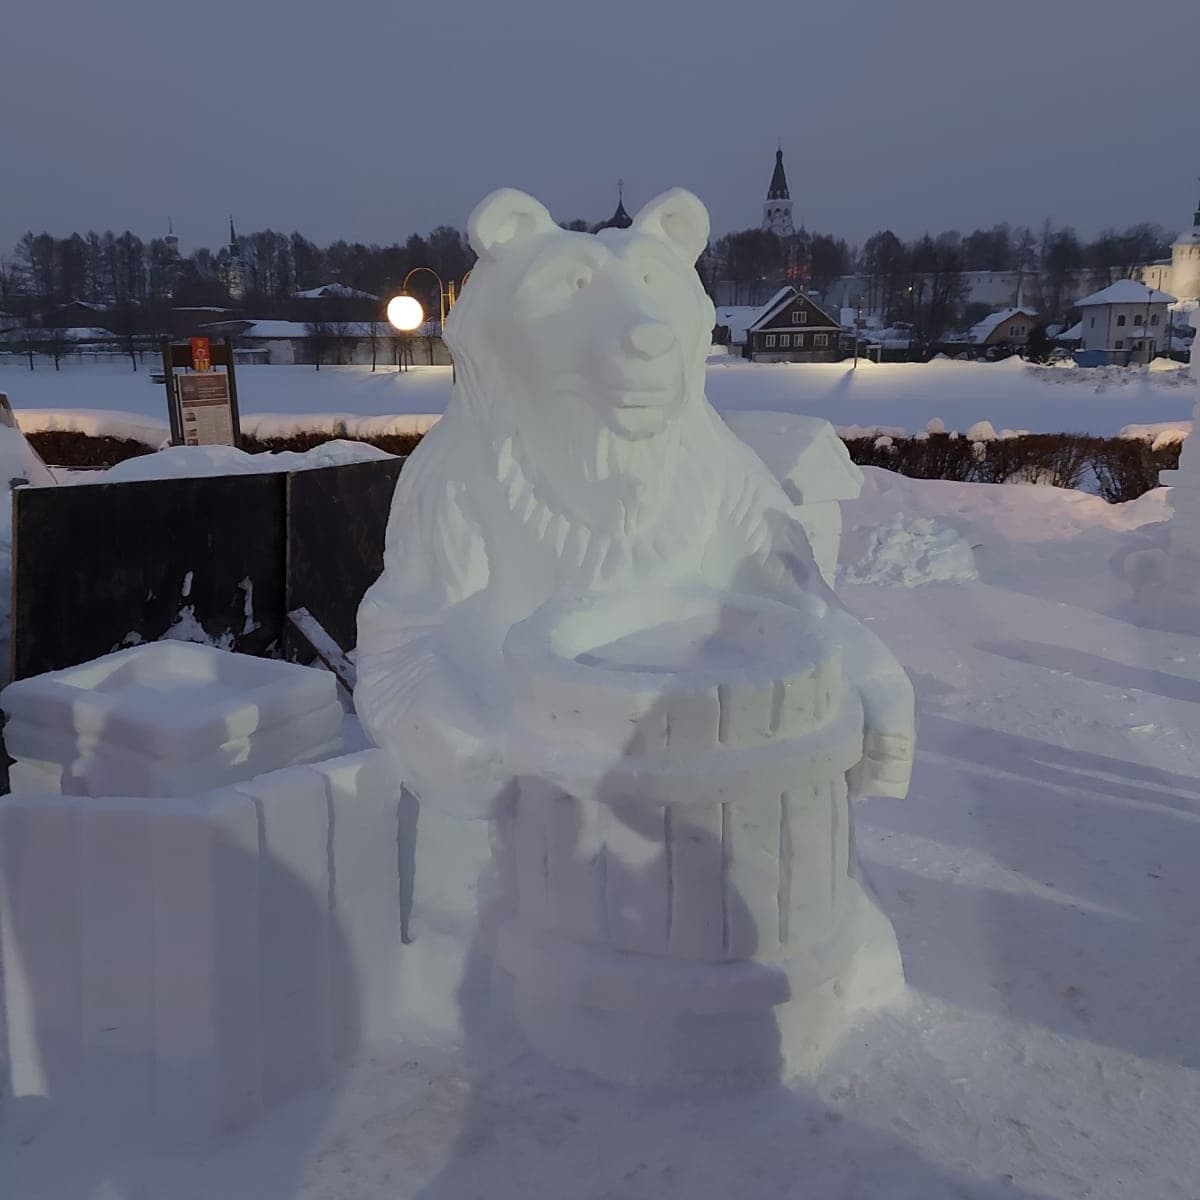 В этом году снега выпало как никогда много. Как его убрать с пользой для дела, знают местные скульпторы-любители. Из сугробов они создают практически произведения искусства.